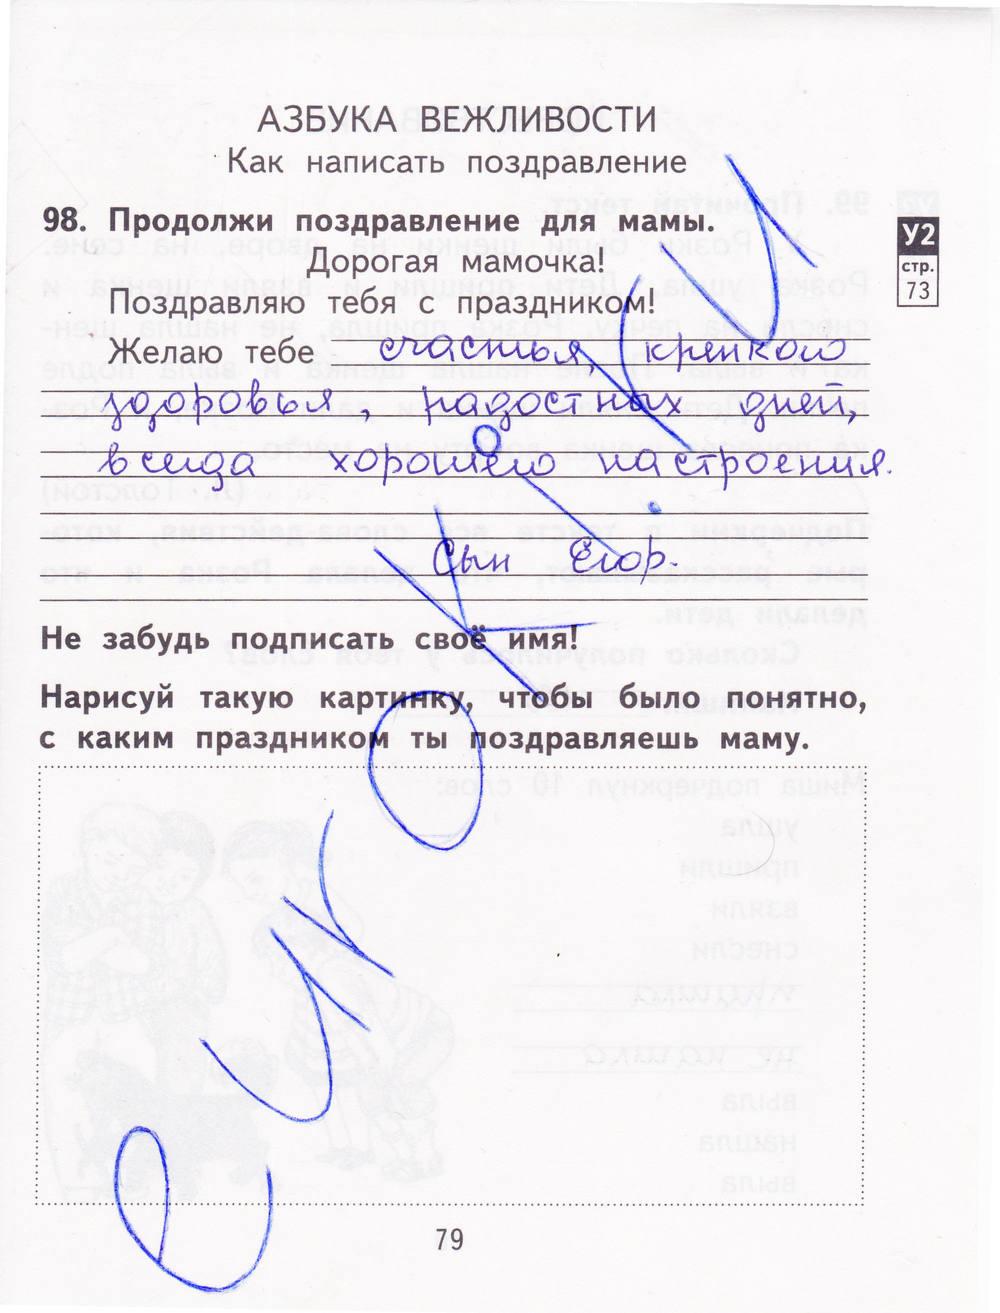 гдз 2 класс рабочая тетрадь часть 2 страница 79 русский язык Байкова, Малаховская